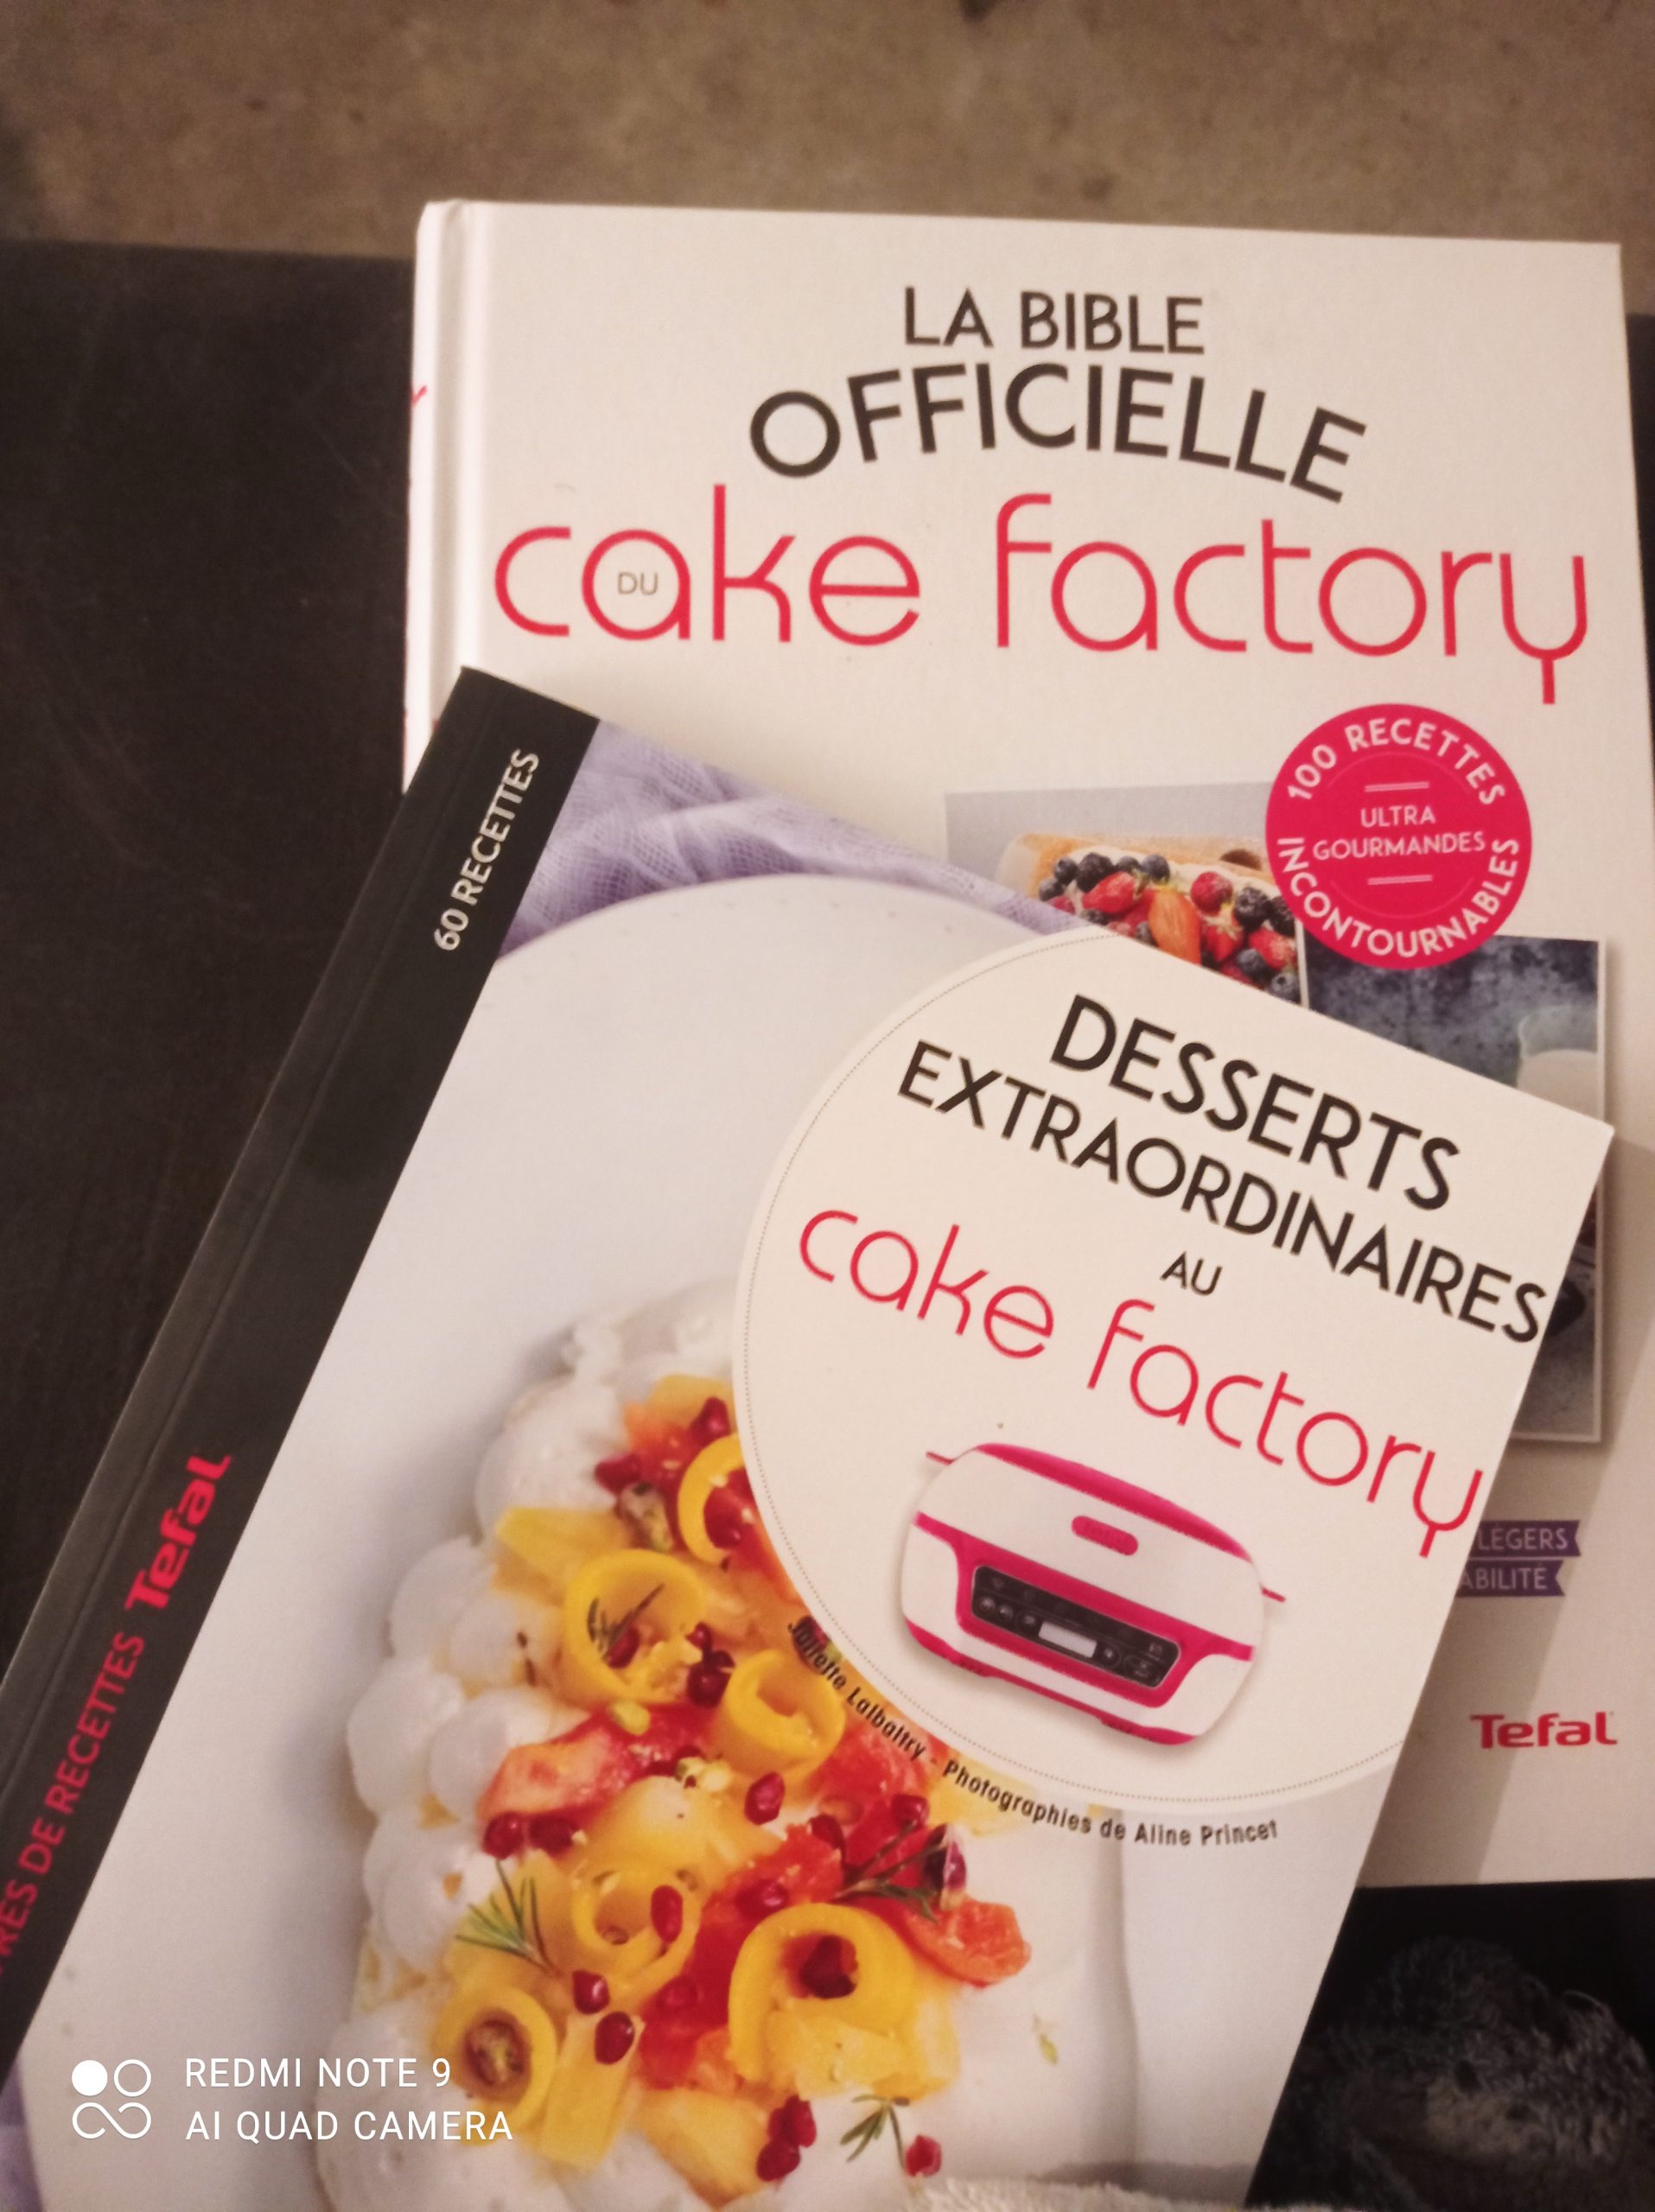 Mon Top 5 de livres de recettes pour le Cake Factory.